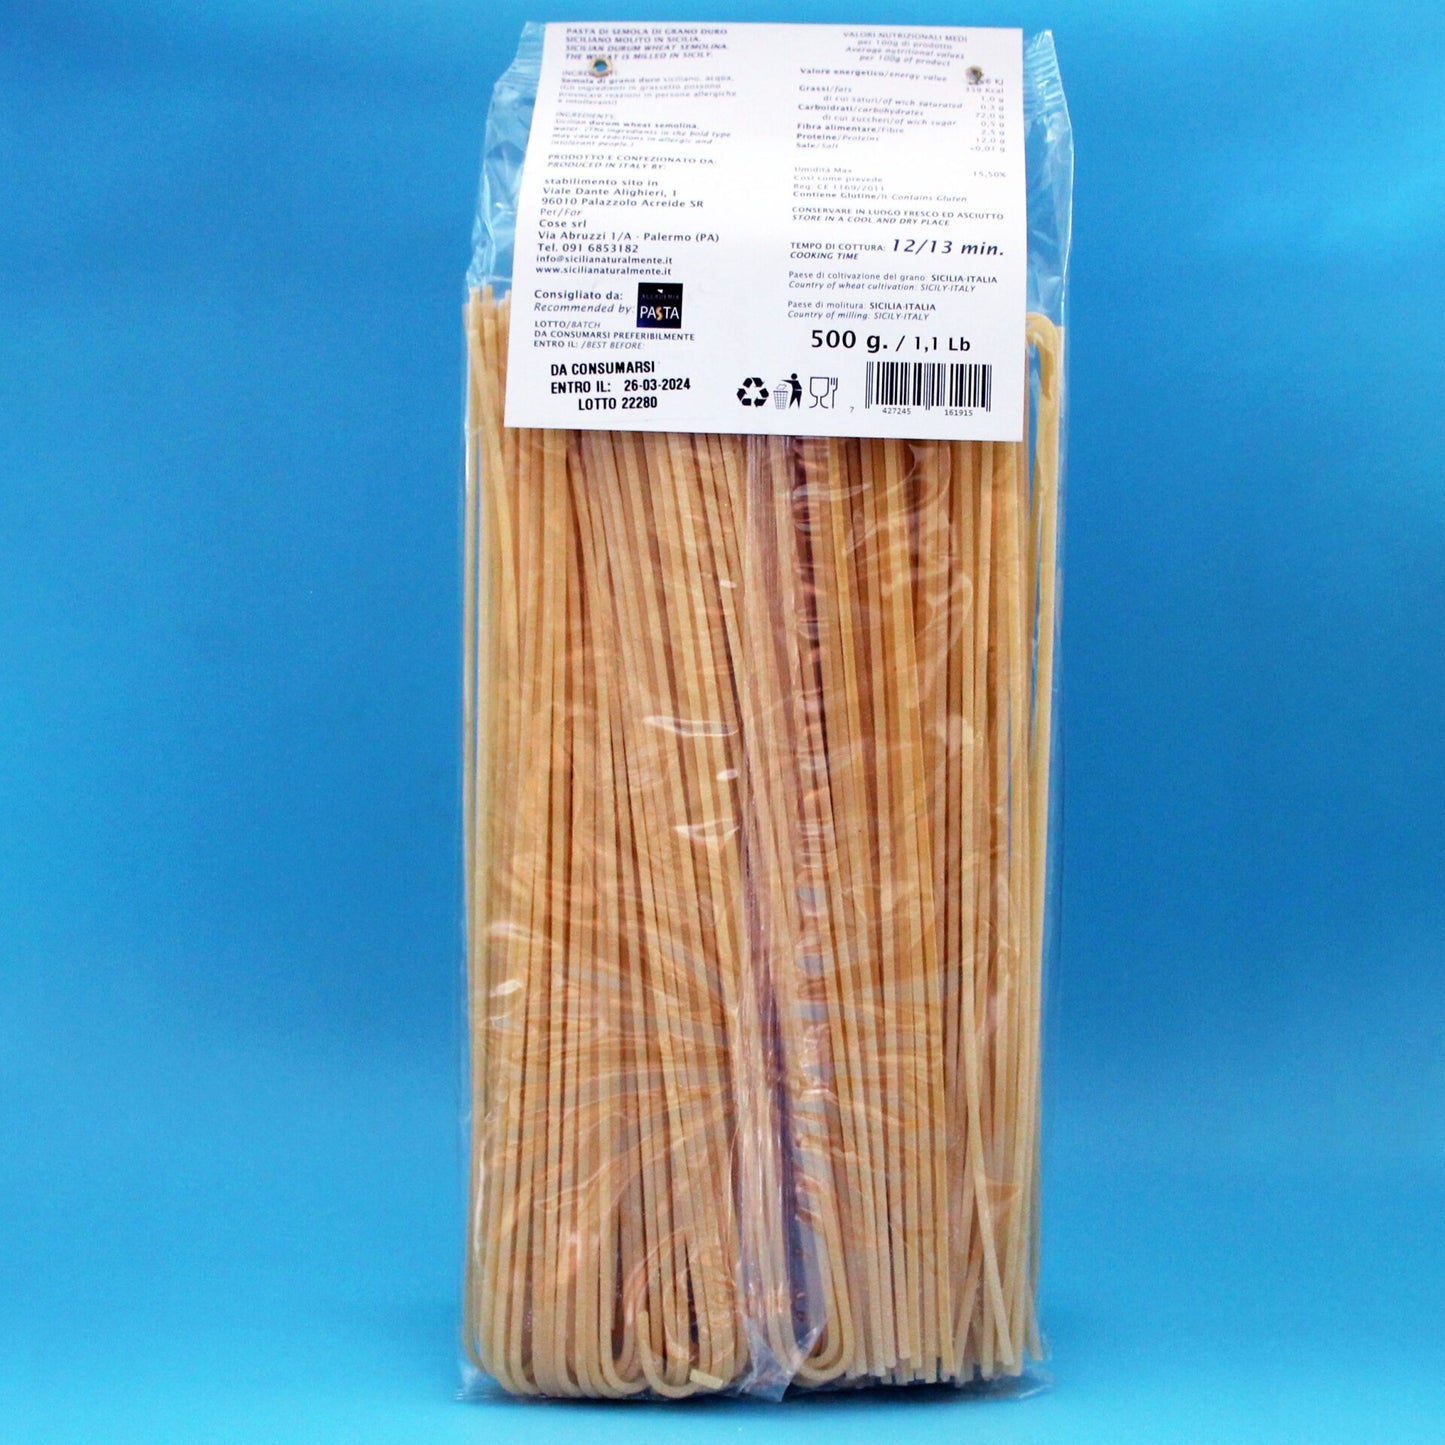 Pasta de espaguetis de trigo duro siciliano-Sicilia por supuesto